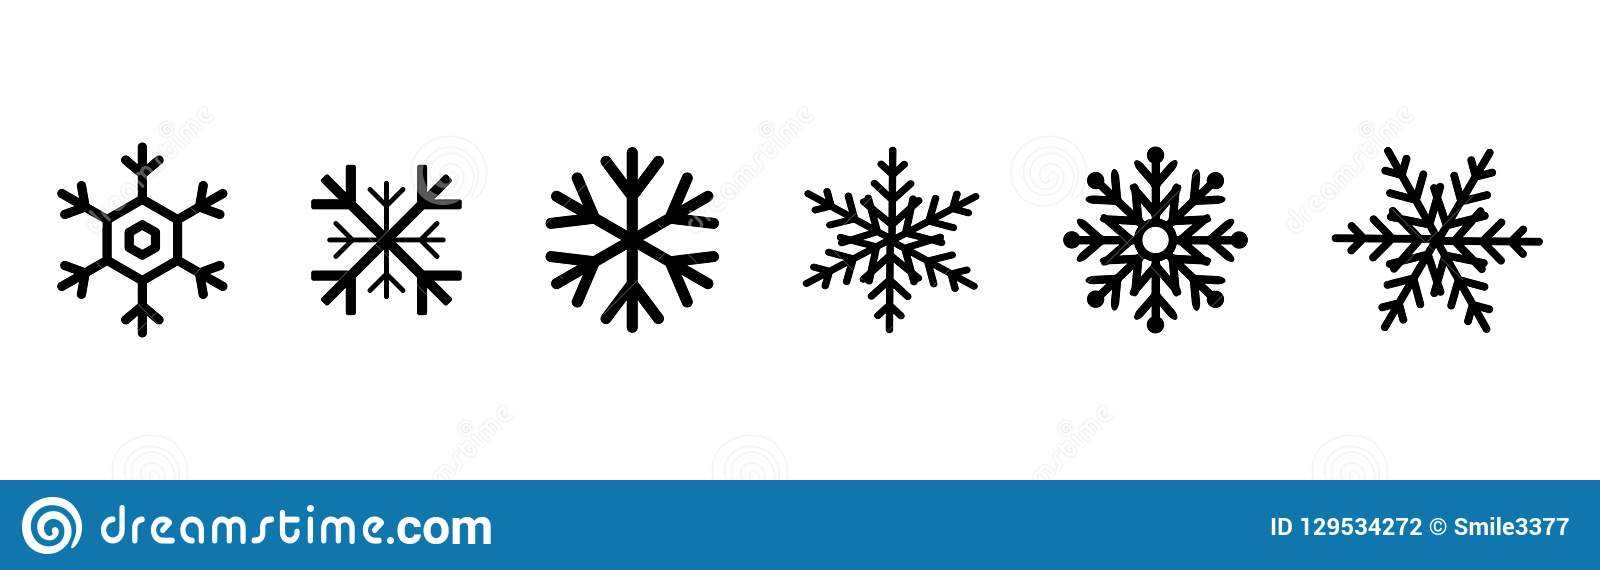 Set Of Black Snowflakes Icons. Black Snowflake. Snowflakes Within Blank Snowflake Template